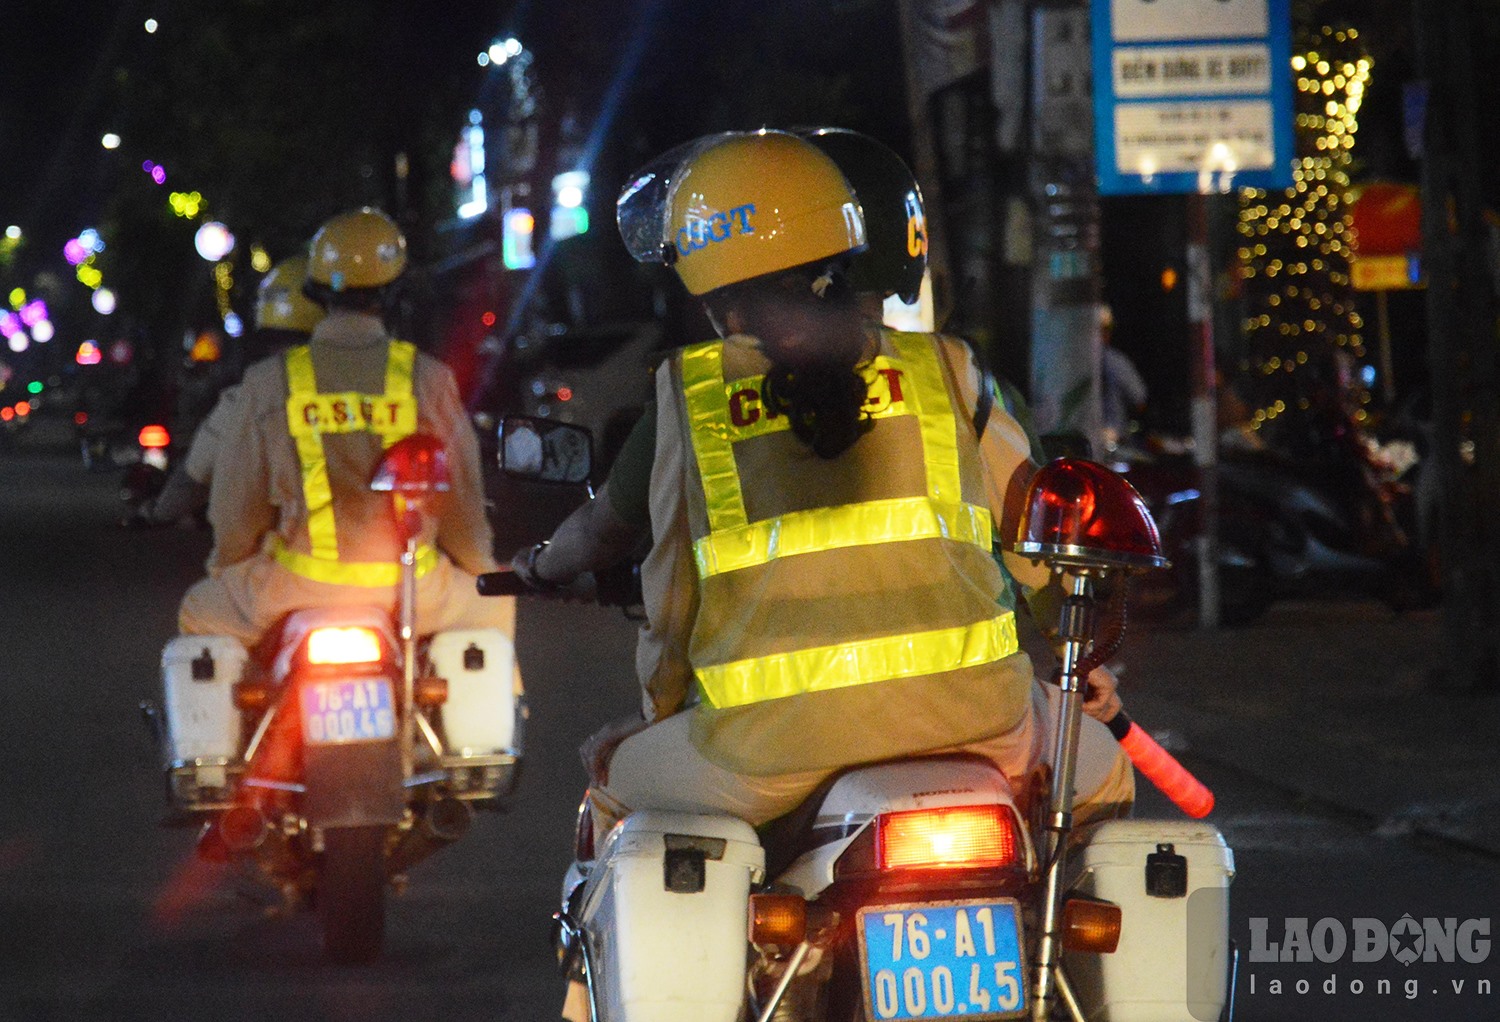 CSGT, Công an TP Quảng Ngãi tuần tra dọc các tuyến đường là “thiên đường” ăn nhậu ở TP Quảng Ngãi để ngăn chặn xử lý người say xỉn nhưng vẫn tham gia giao thông. Ảnh: Ngọc Viên